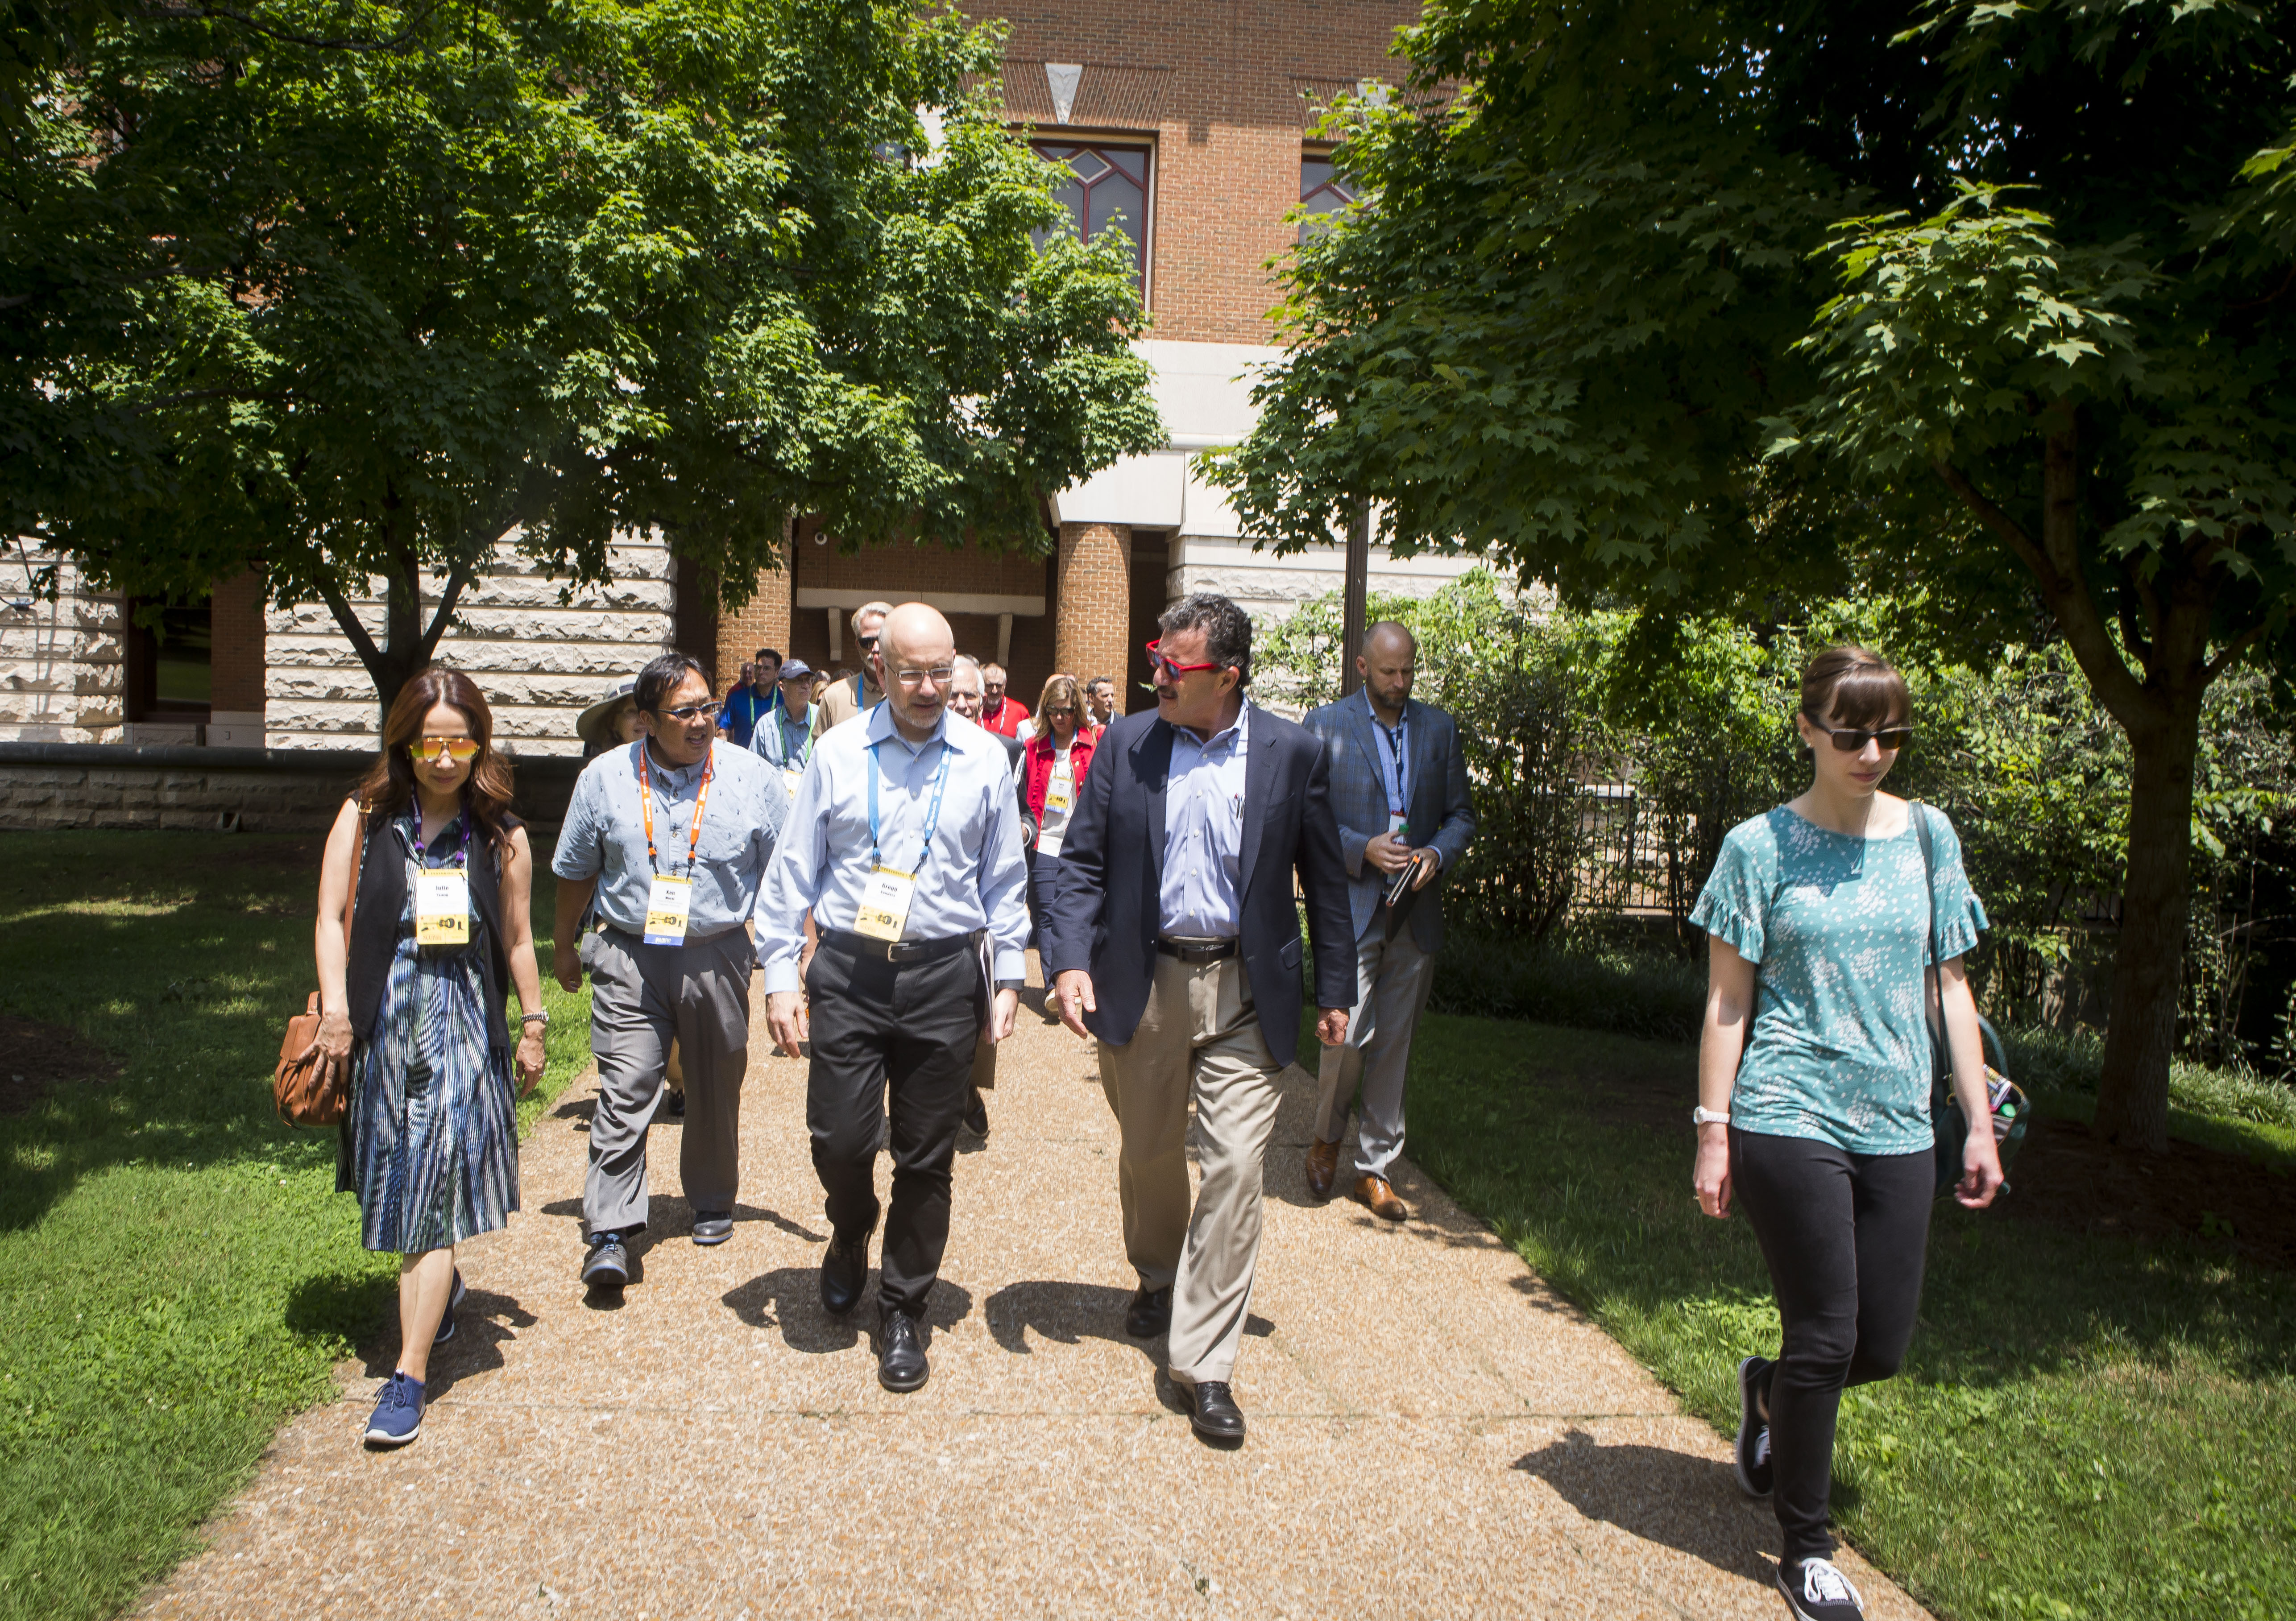 Mike Perez leads SCUP tour participants through campus. (Vanderbilt/Susan Urmy)